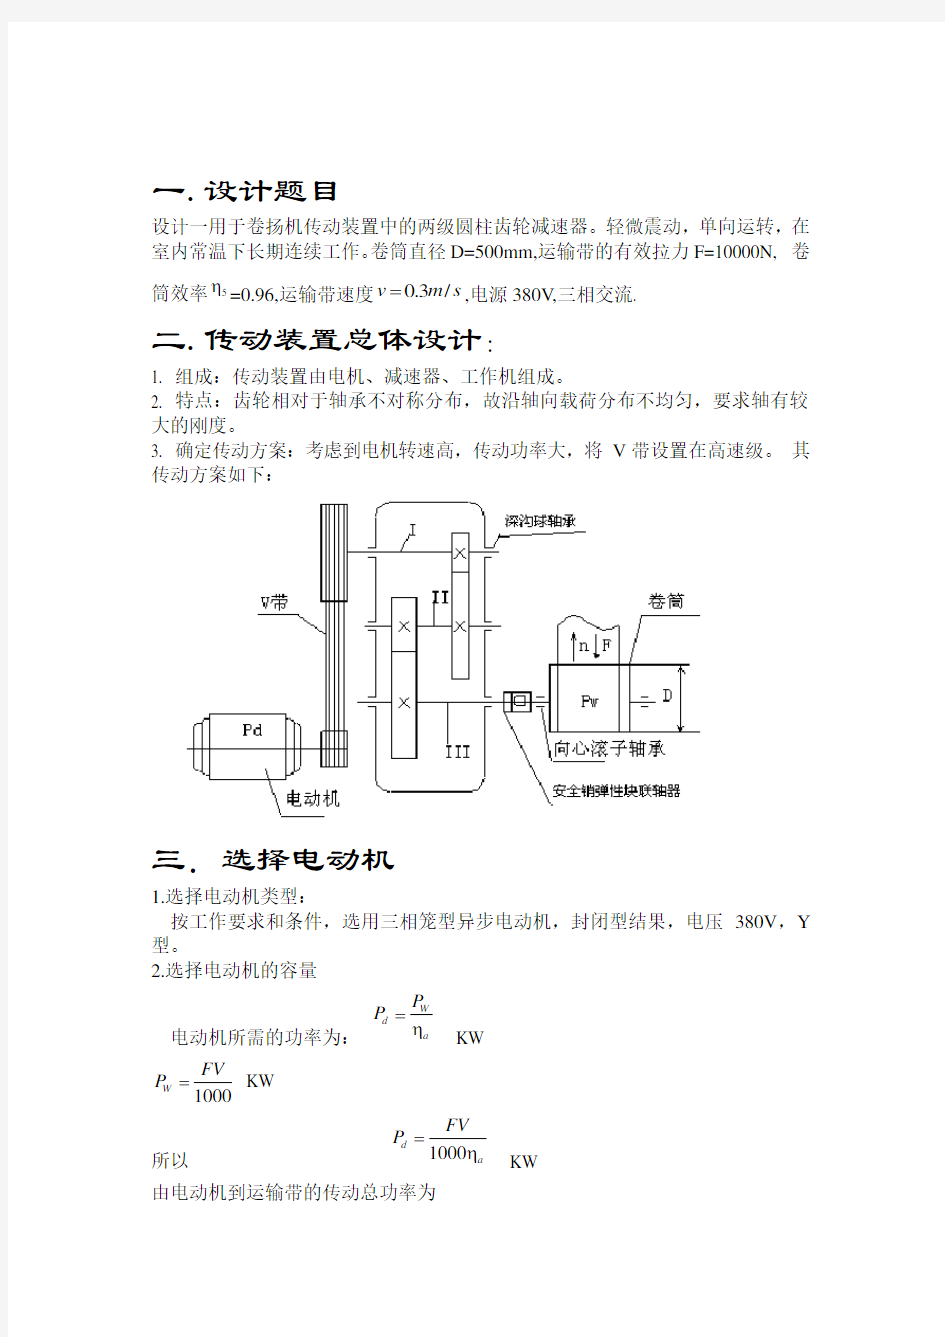 课程设计二级圆柱齿轮减速器设计说明书(CAD图)